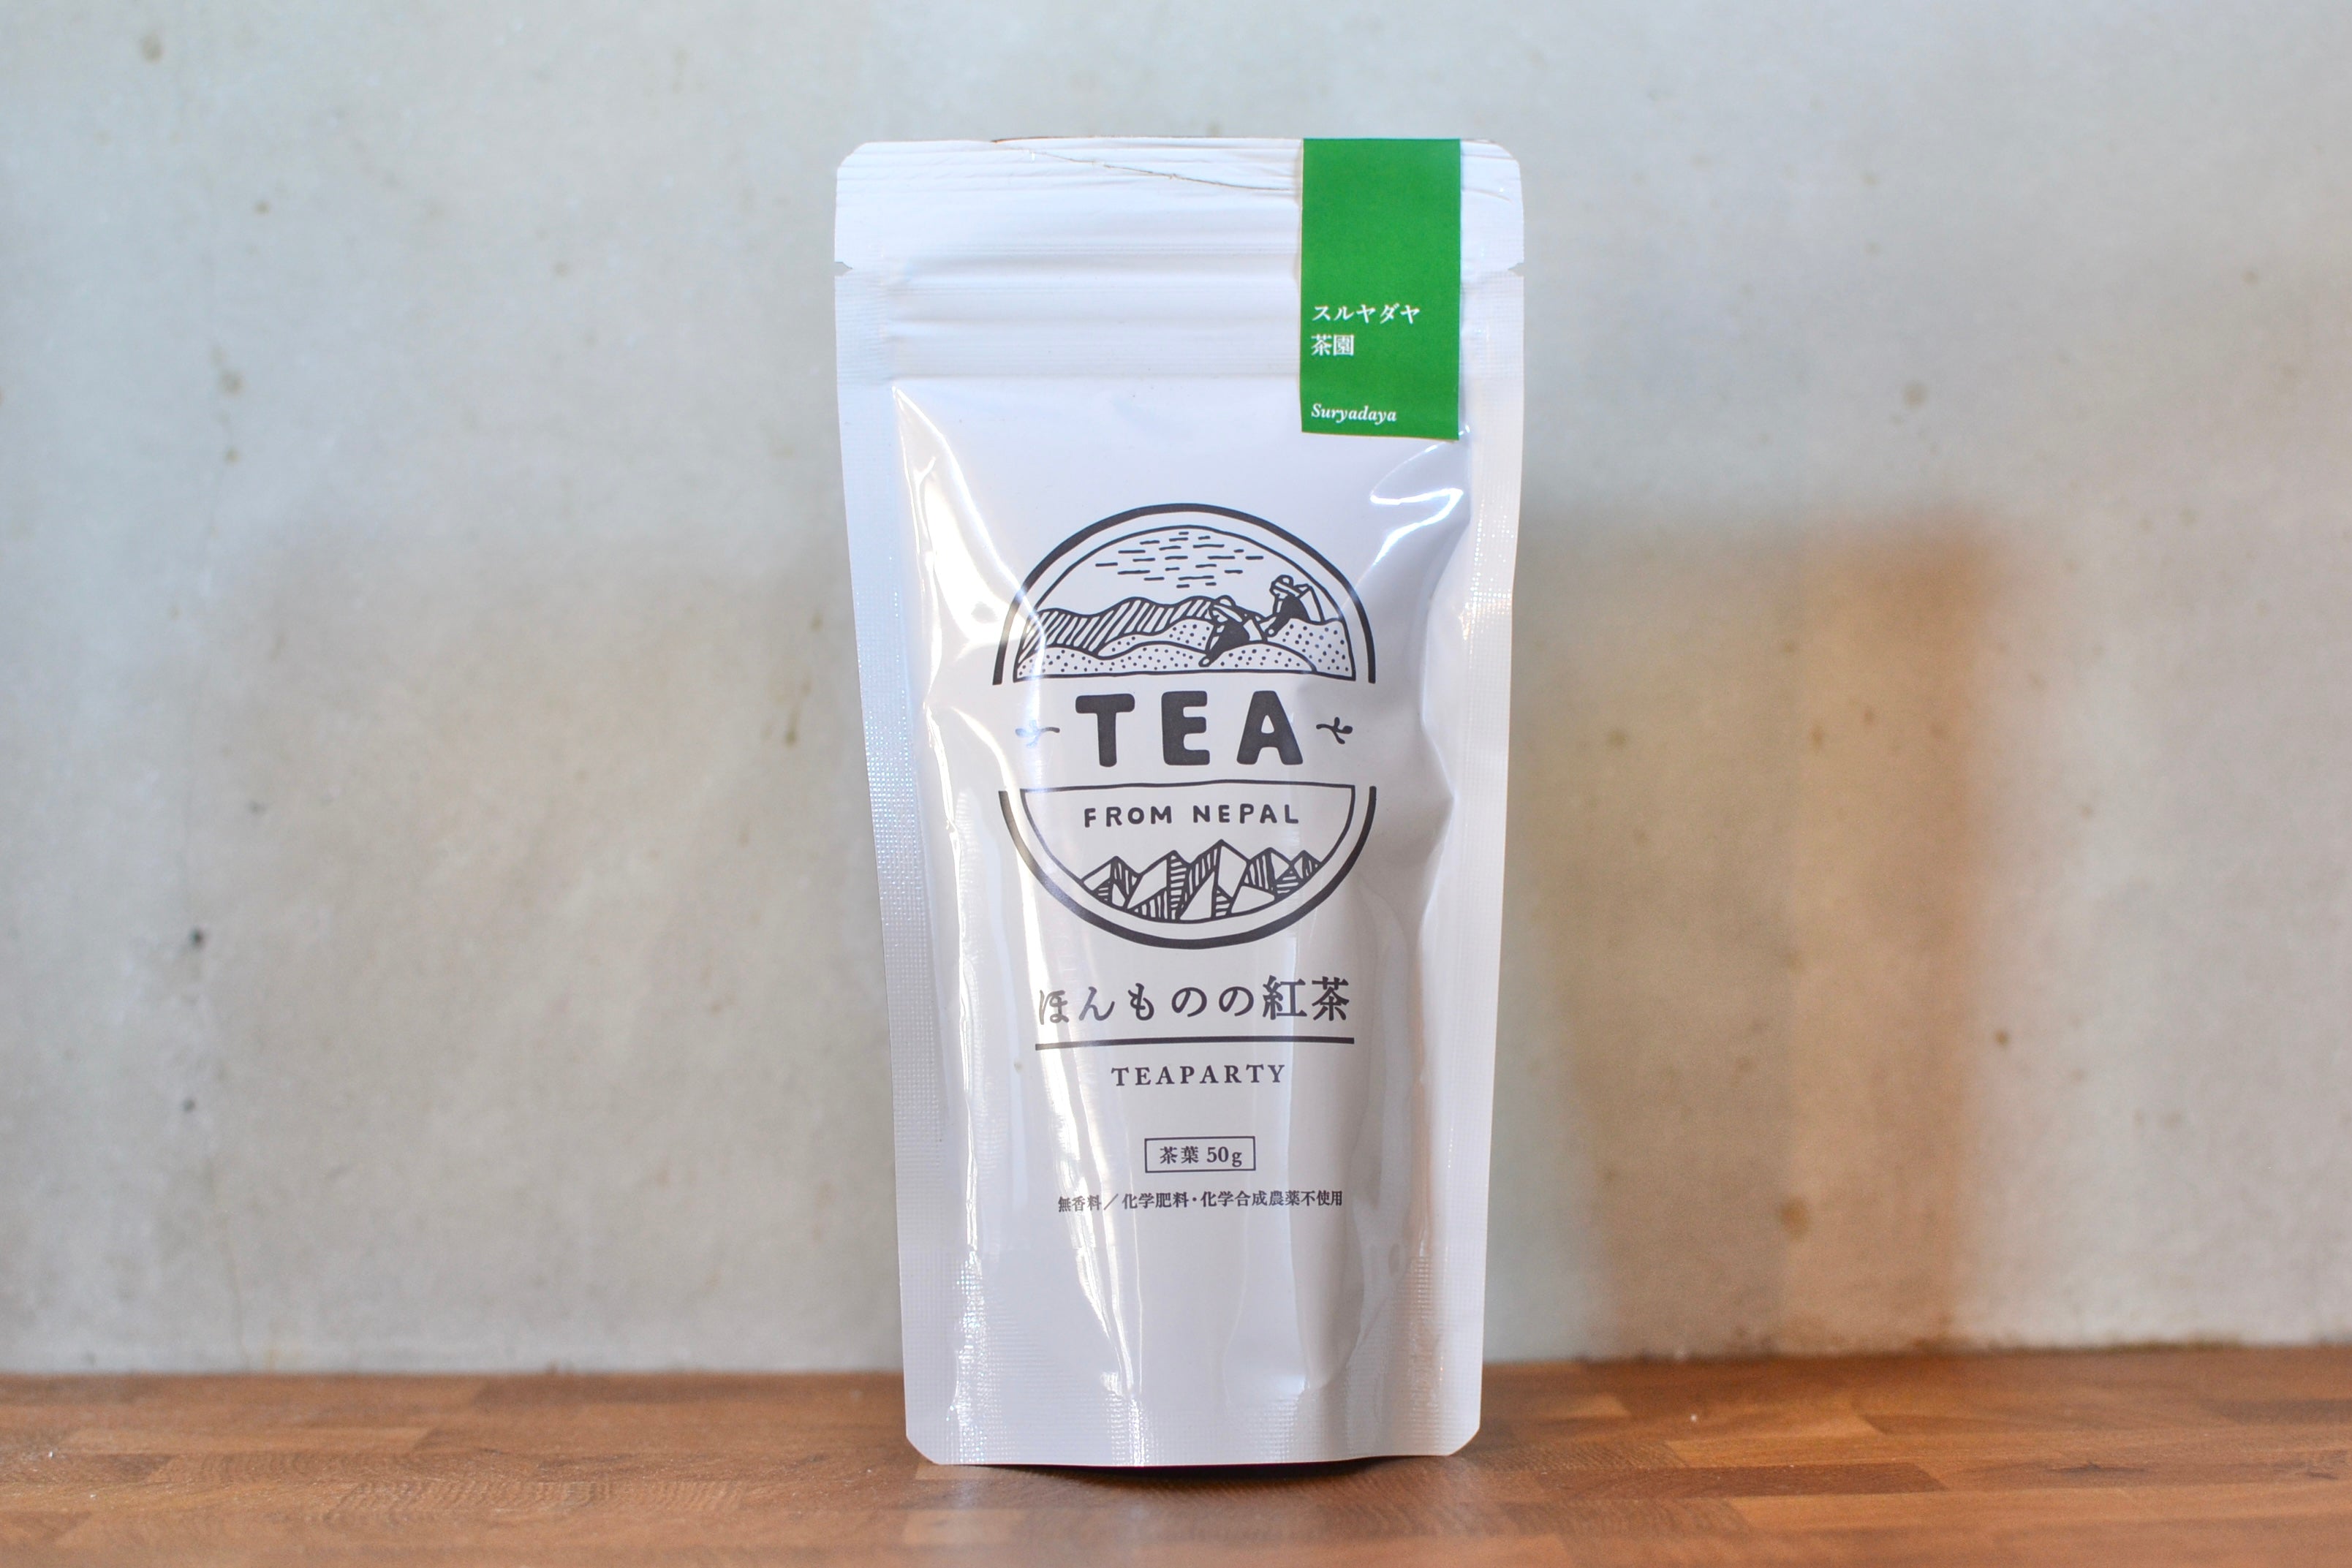 【イラム紅茶スルヤダヤ茶園 新茶】ダージリン隣接地産 稀少ネパール紅茶 さわやかな香り